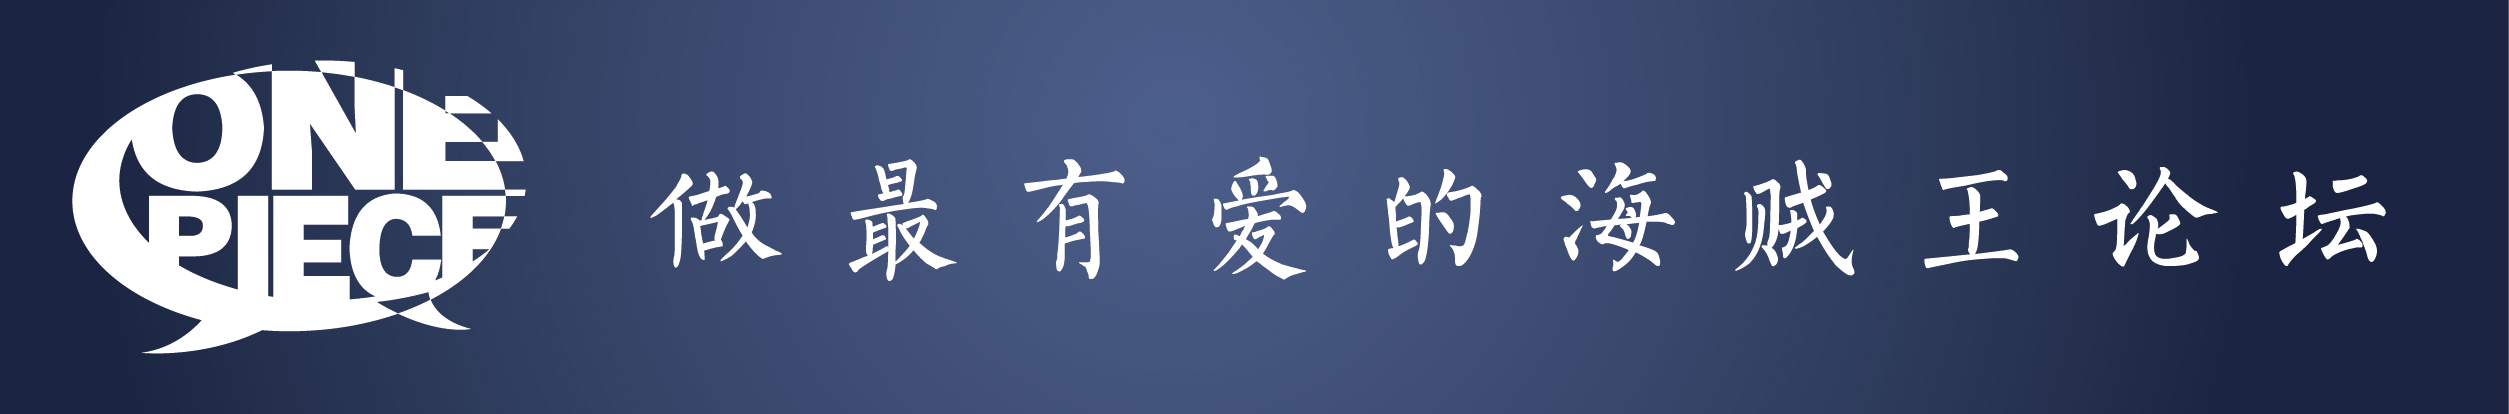 论坛logo-02.jpg